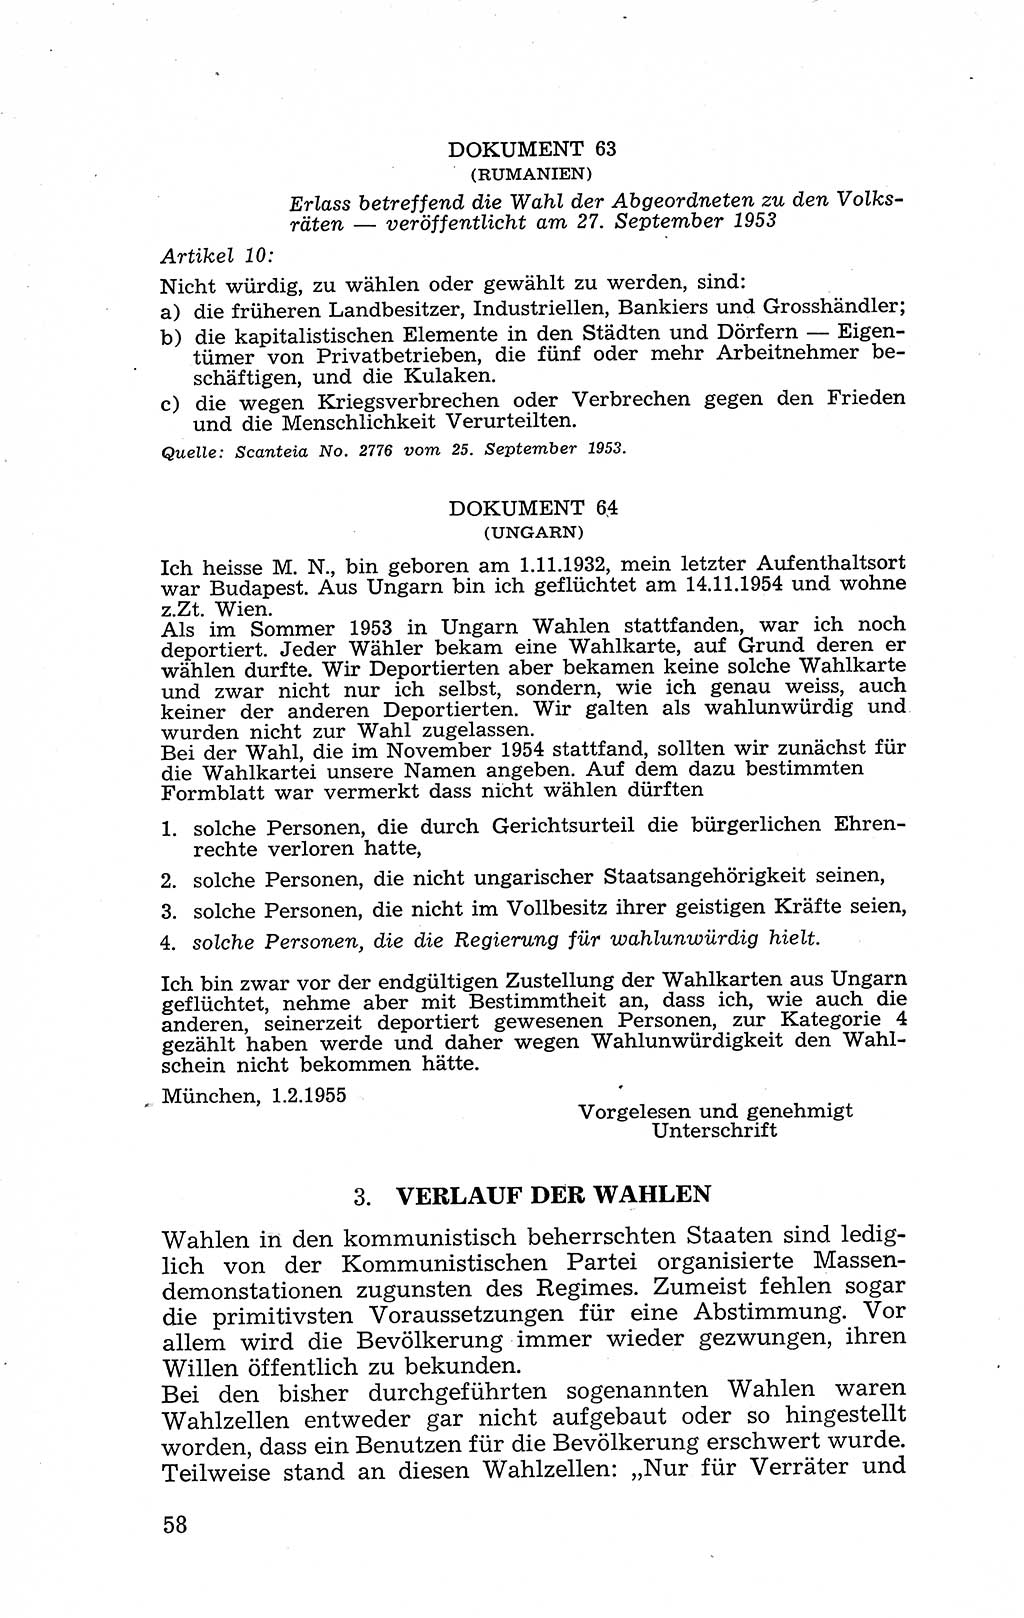 Recht in Fesseln, Dokumente, Internationale Juristen-Kommission [Bundesrepublik Deutschland (BRD)] 1955, Seite 58 (R. Dok. IJK BRD 1955, S. 58)